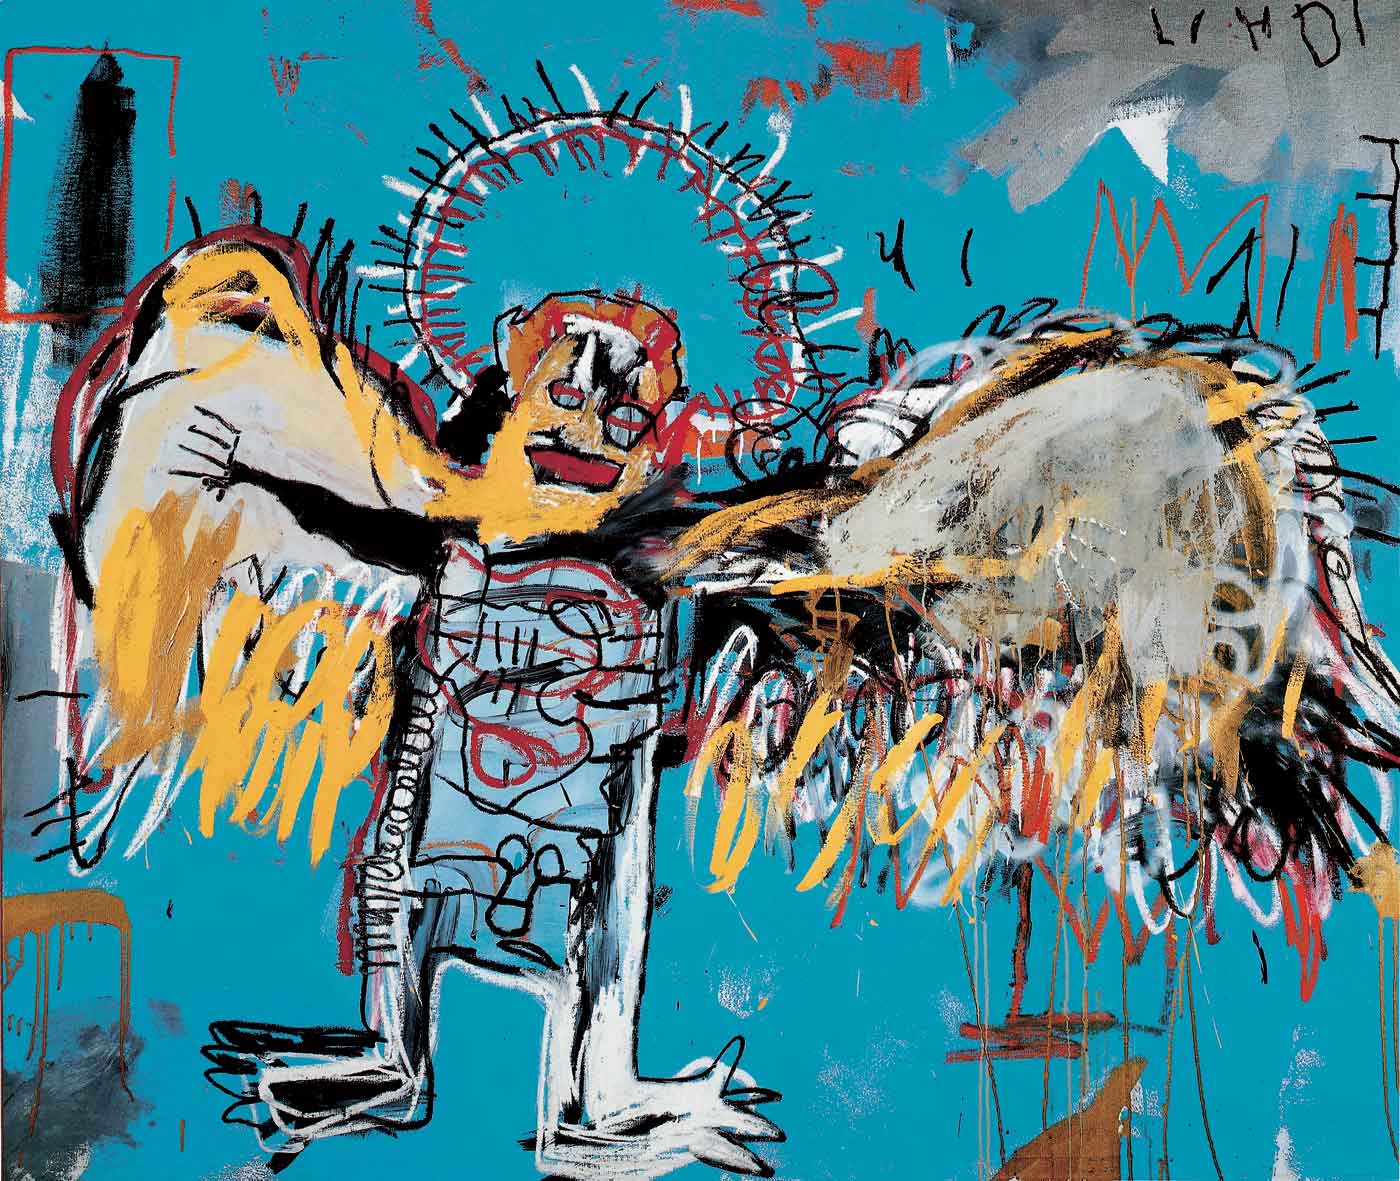 無題 (墮落天使) by Jean-Michel Basquiat - 西元1981 - 66 x 78 英吋 